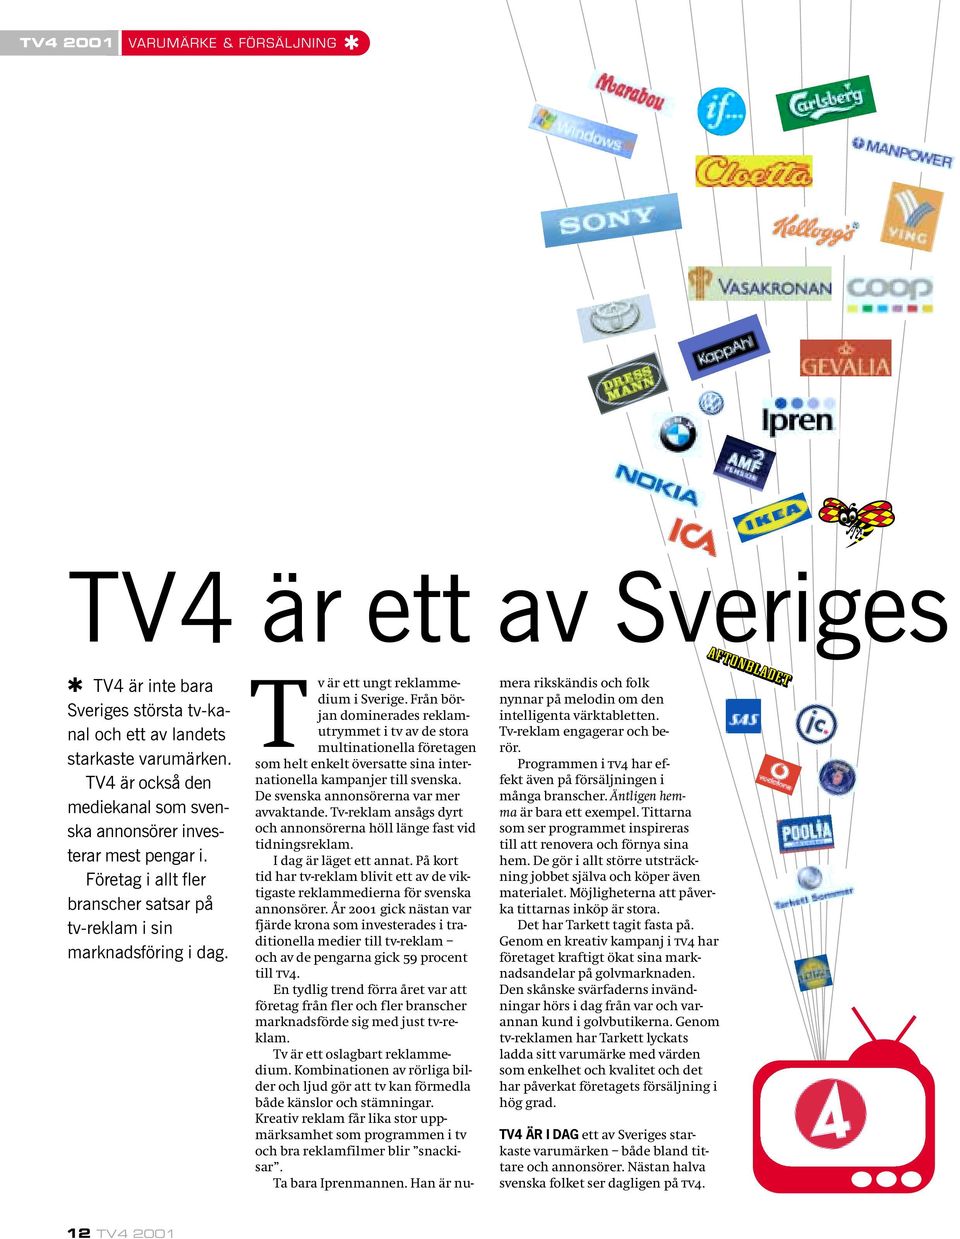 Från början dominerades reklamutrymmet i tv av de stora multinationella företagen som helt enkelt översatte sina internationella kampanjer till svenska. De svenska annonsörerna var mer avvaktande.